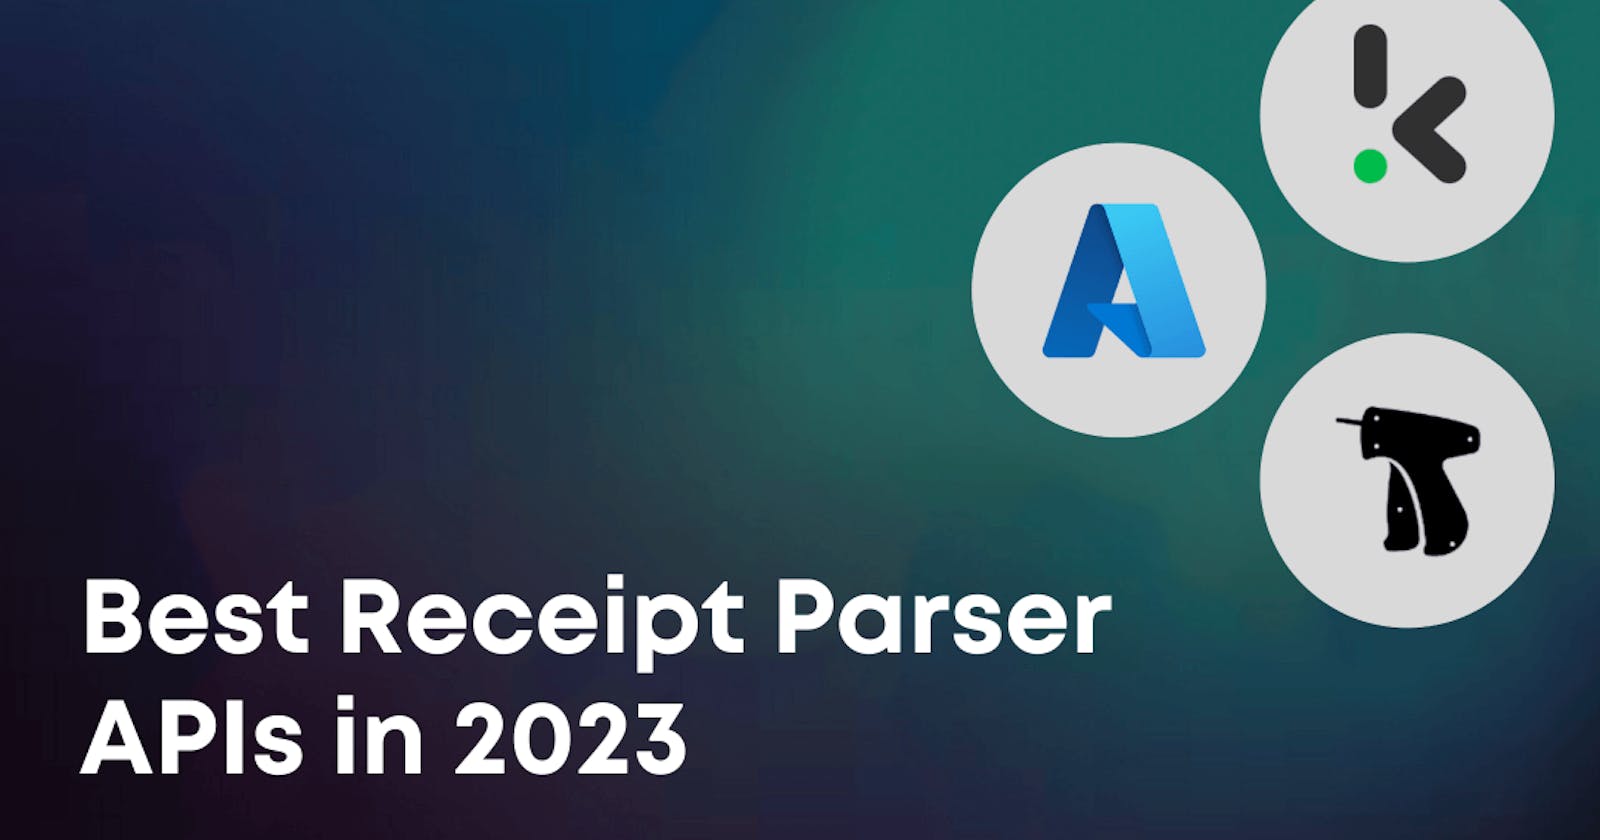 Best Receipt Parser APIs in 2023